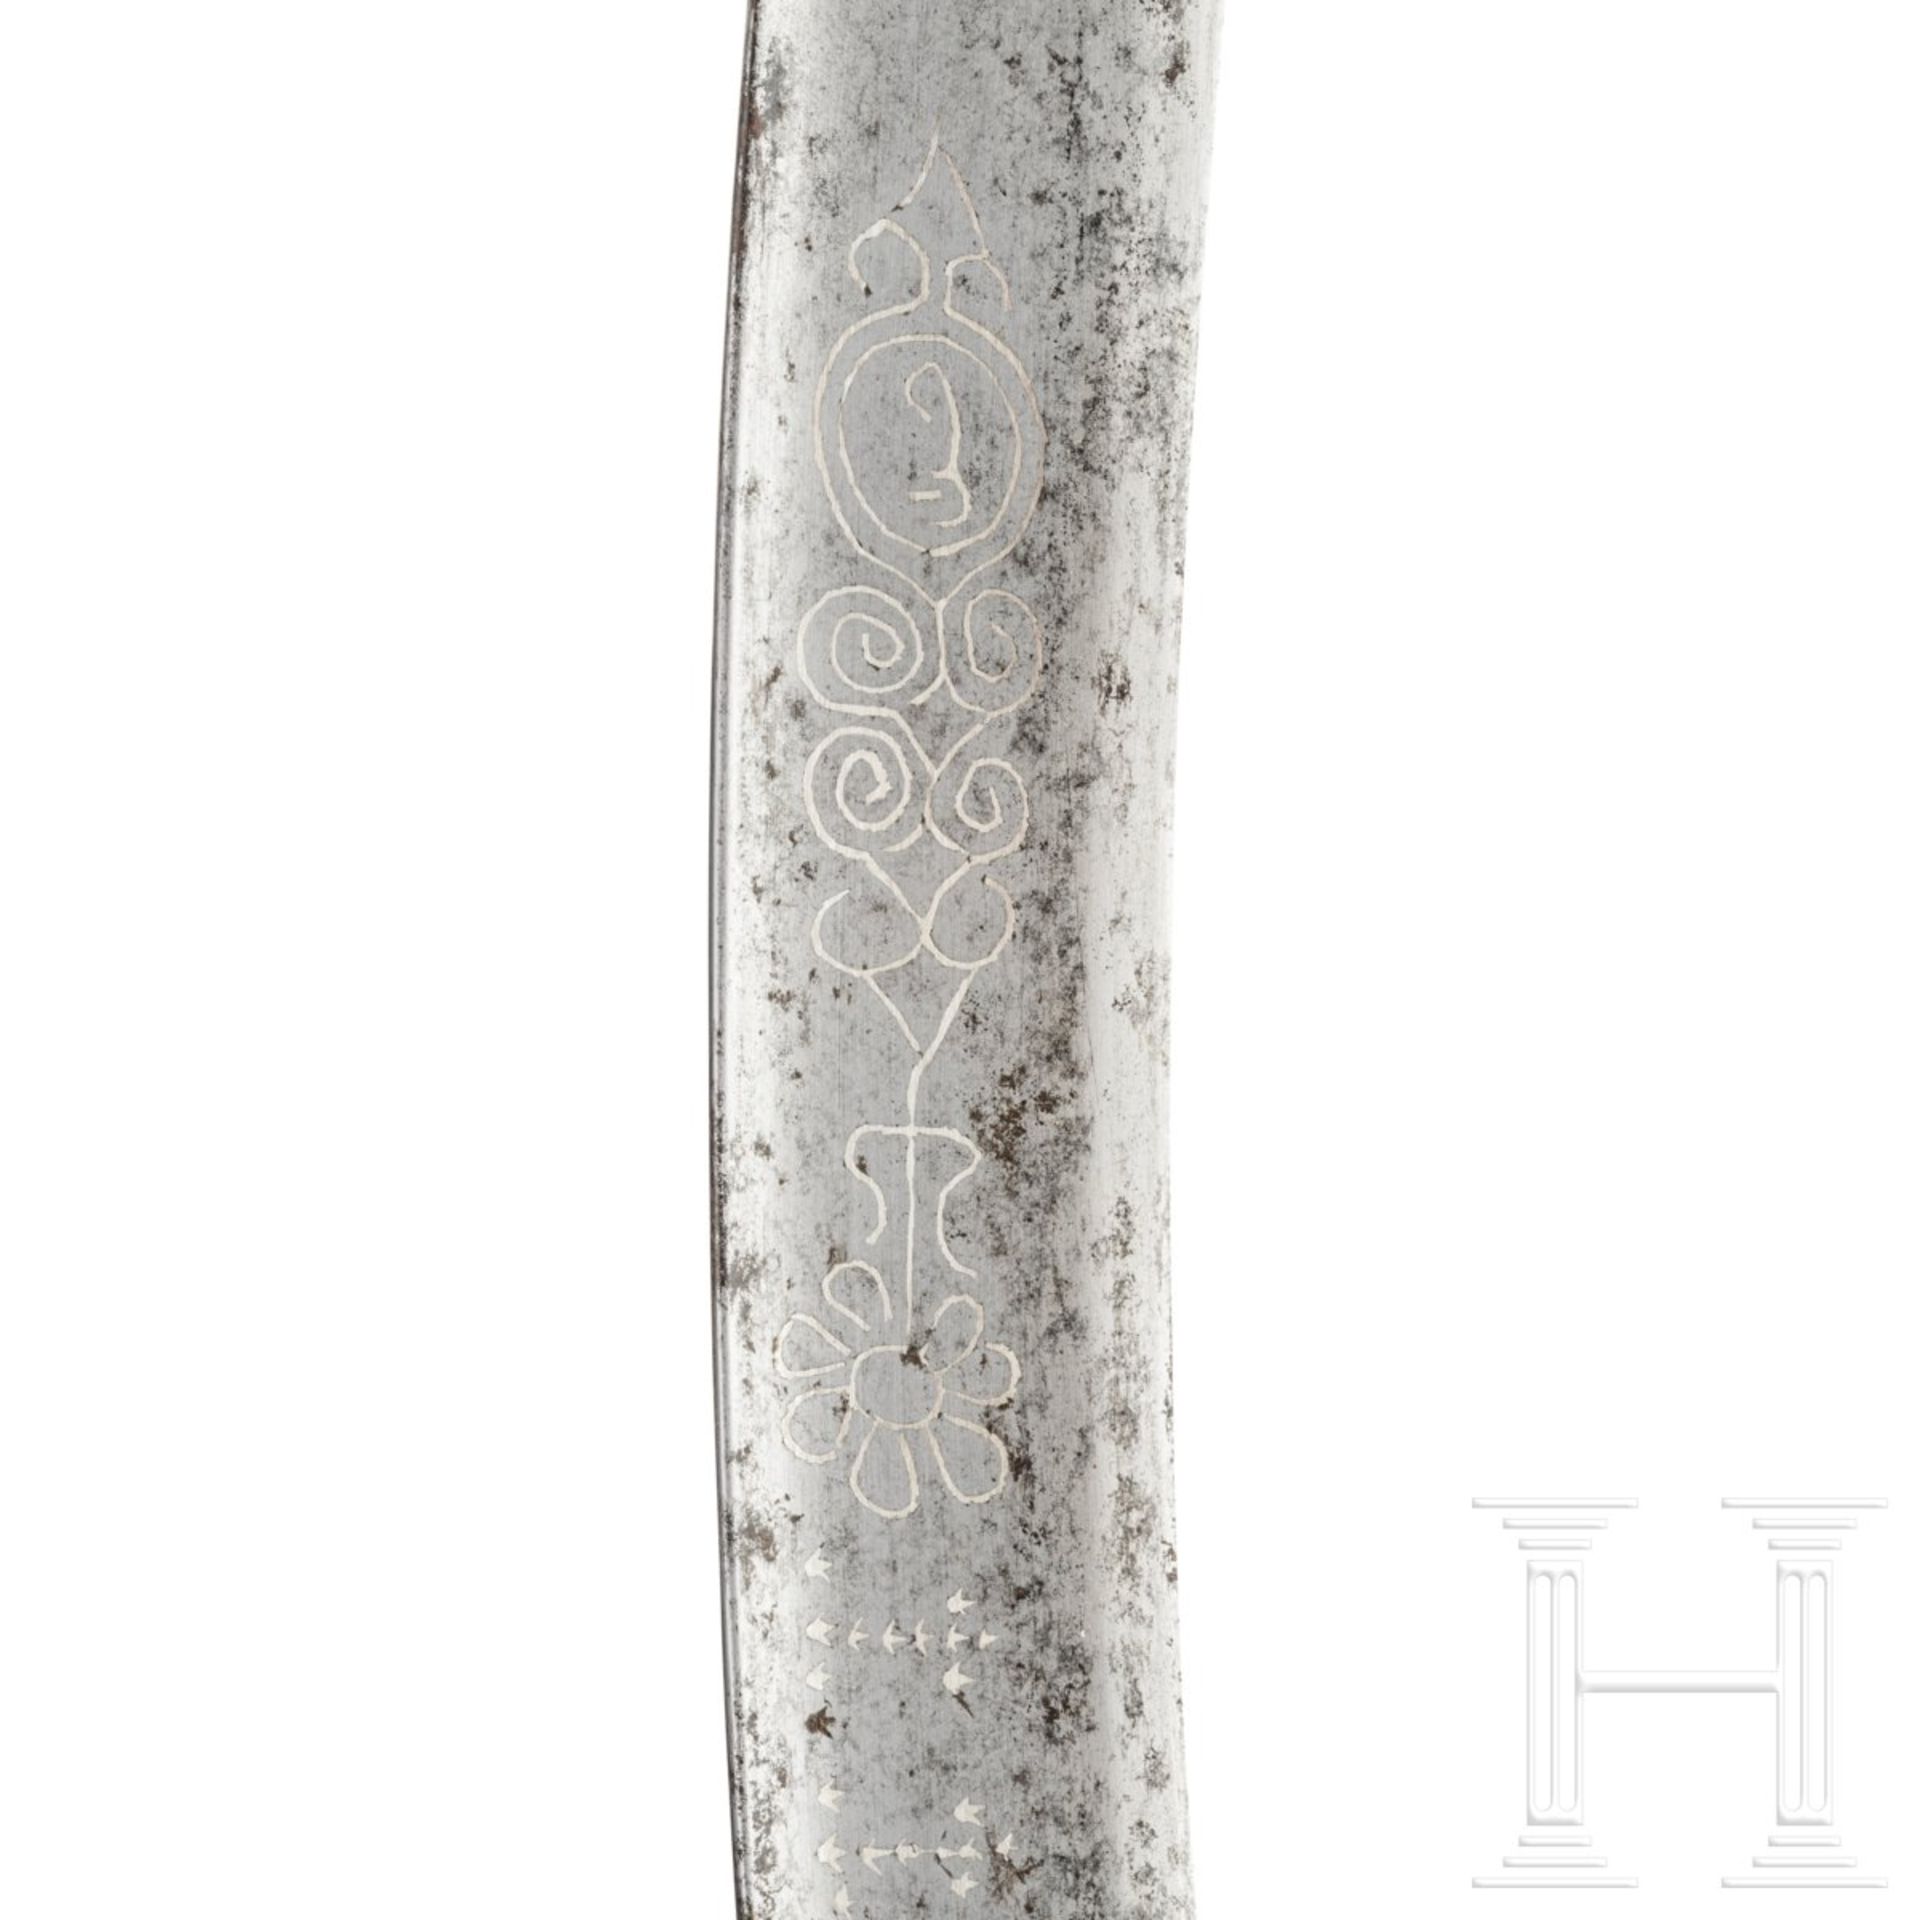 Silbermontierter Yatagan, osmanisch, um 1800 - Image 4 of 5